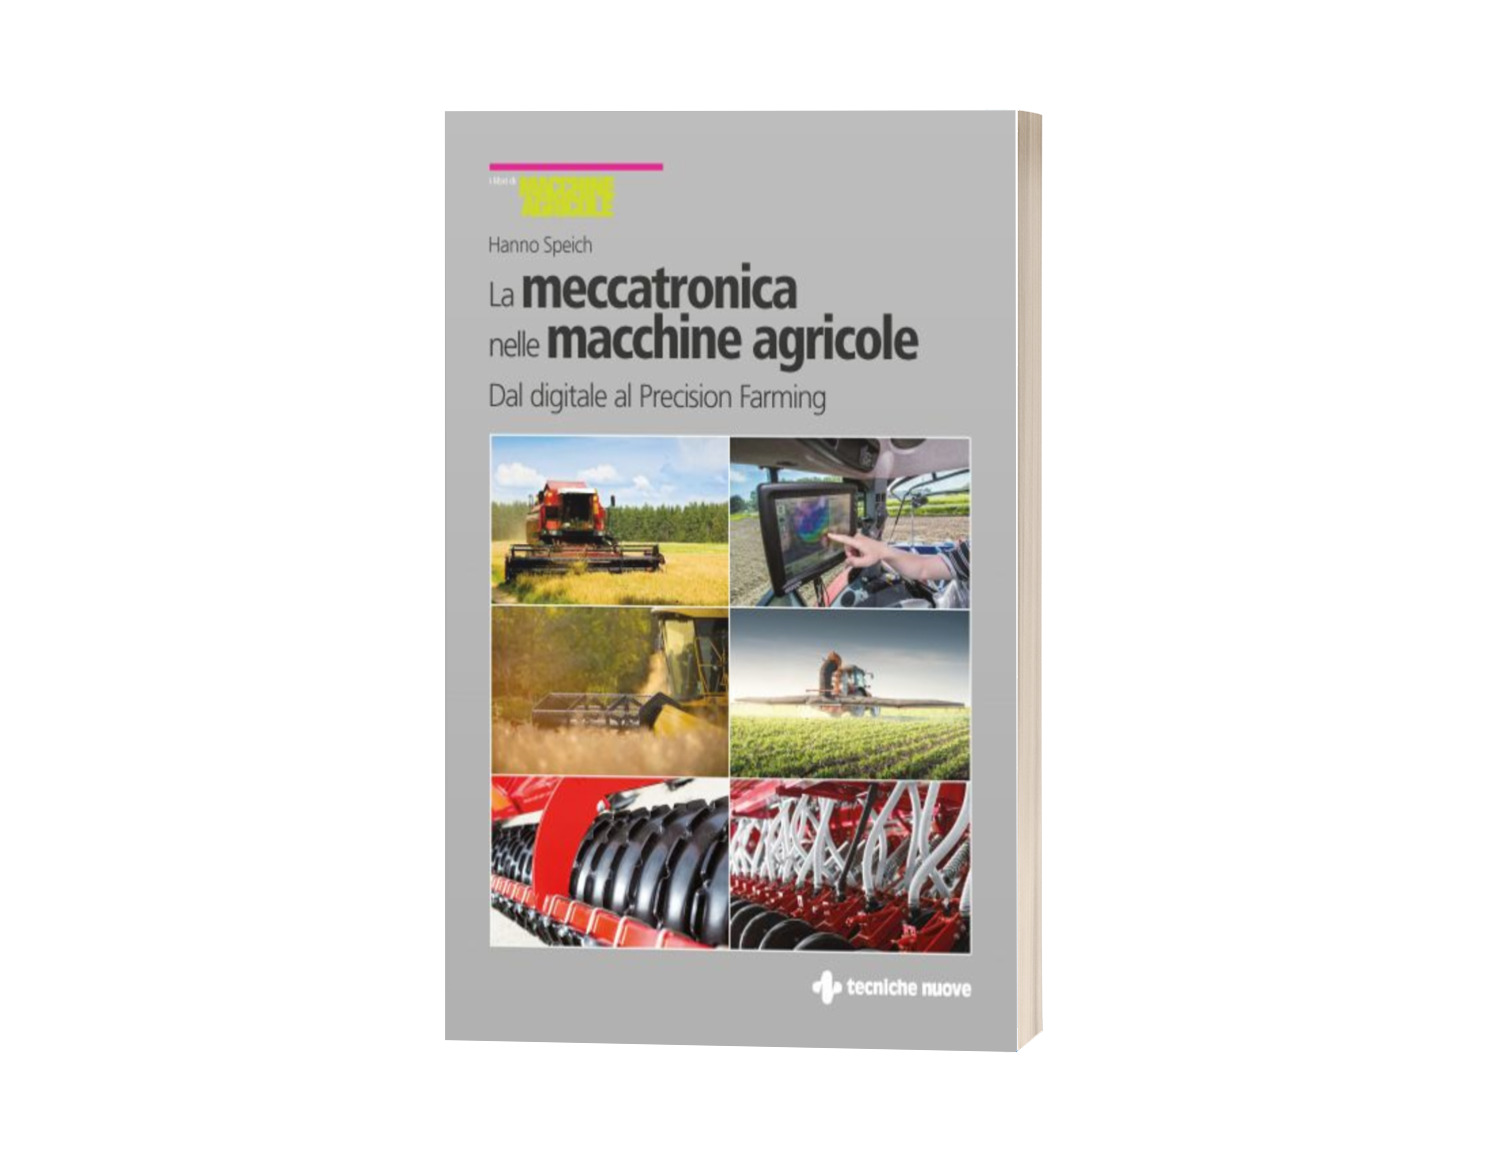  La meccatronica nelle macchine agricole. Dal digitale al Precision Farming